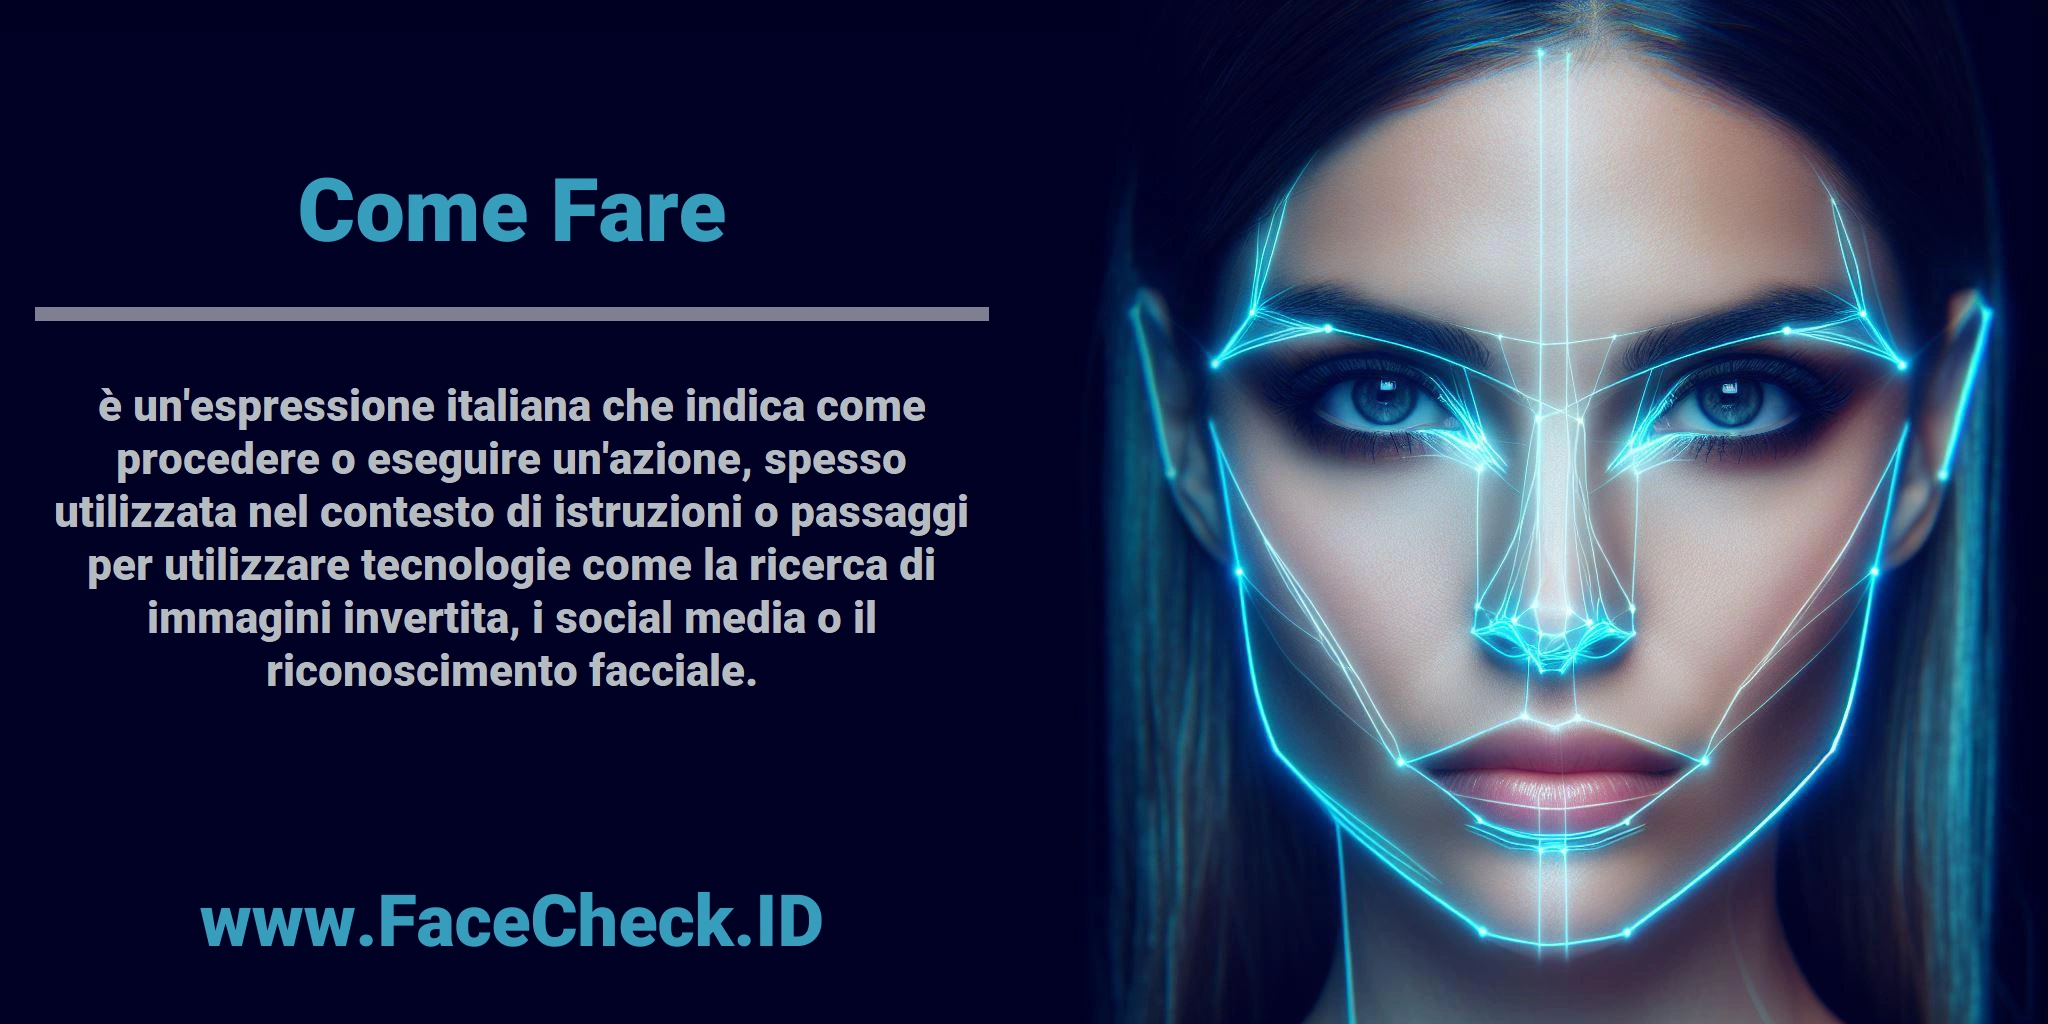 <b>Come Fare</b> è un'espressione italiana che indica come procedere o eseguire un'azione, spesso utilizzata nel contesto di istruzioni o passaggi per utilizzare tecnologie come la ricerca di immagini invertita, i social media o il riconoscimento facciale.